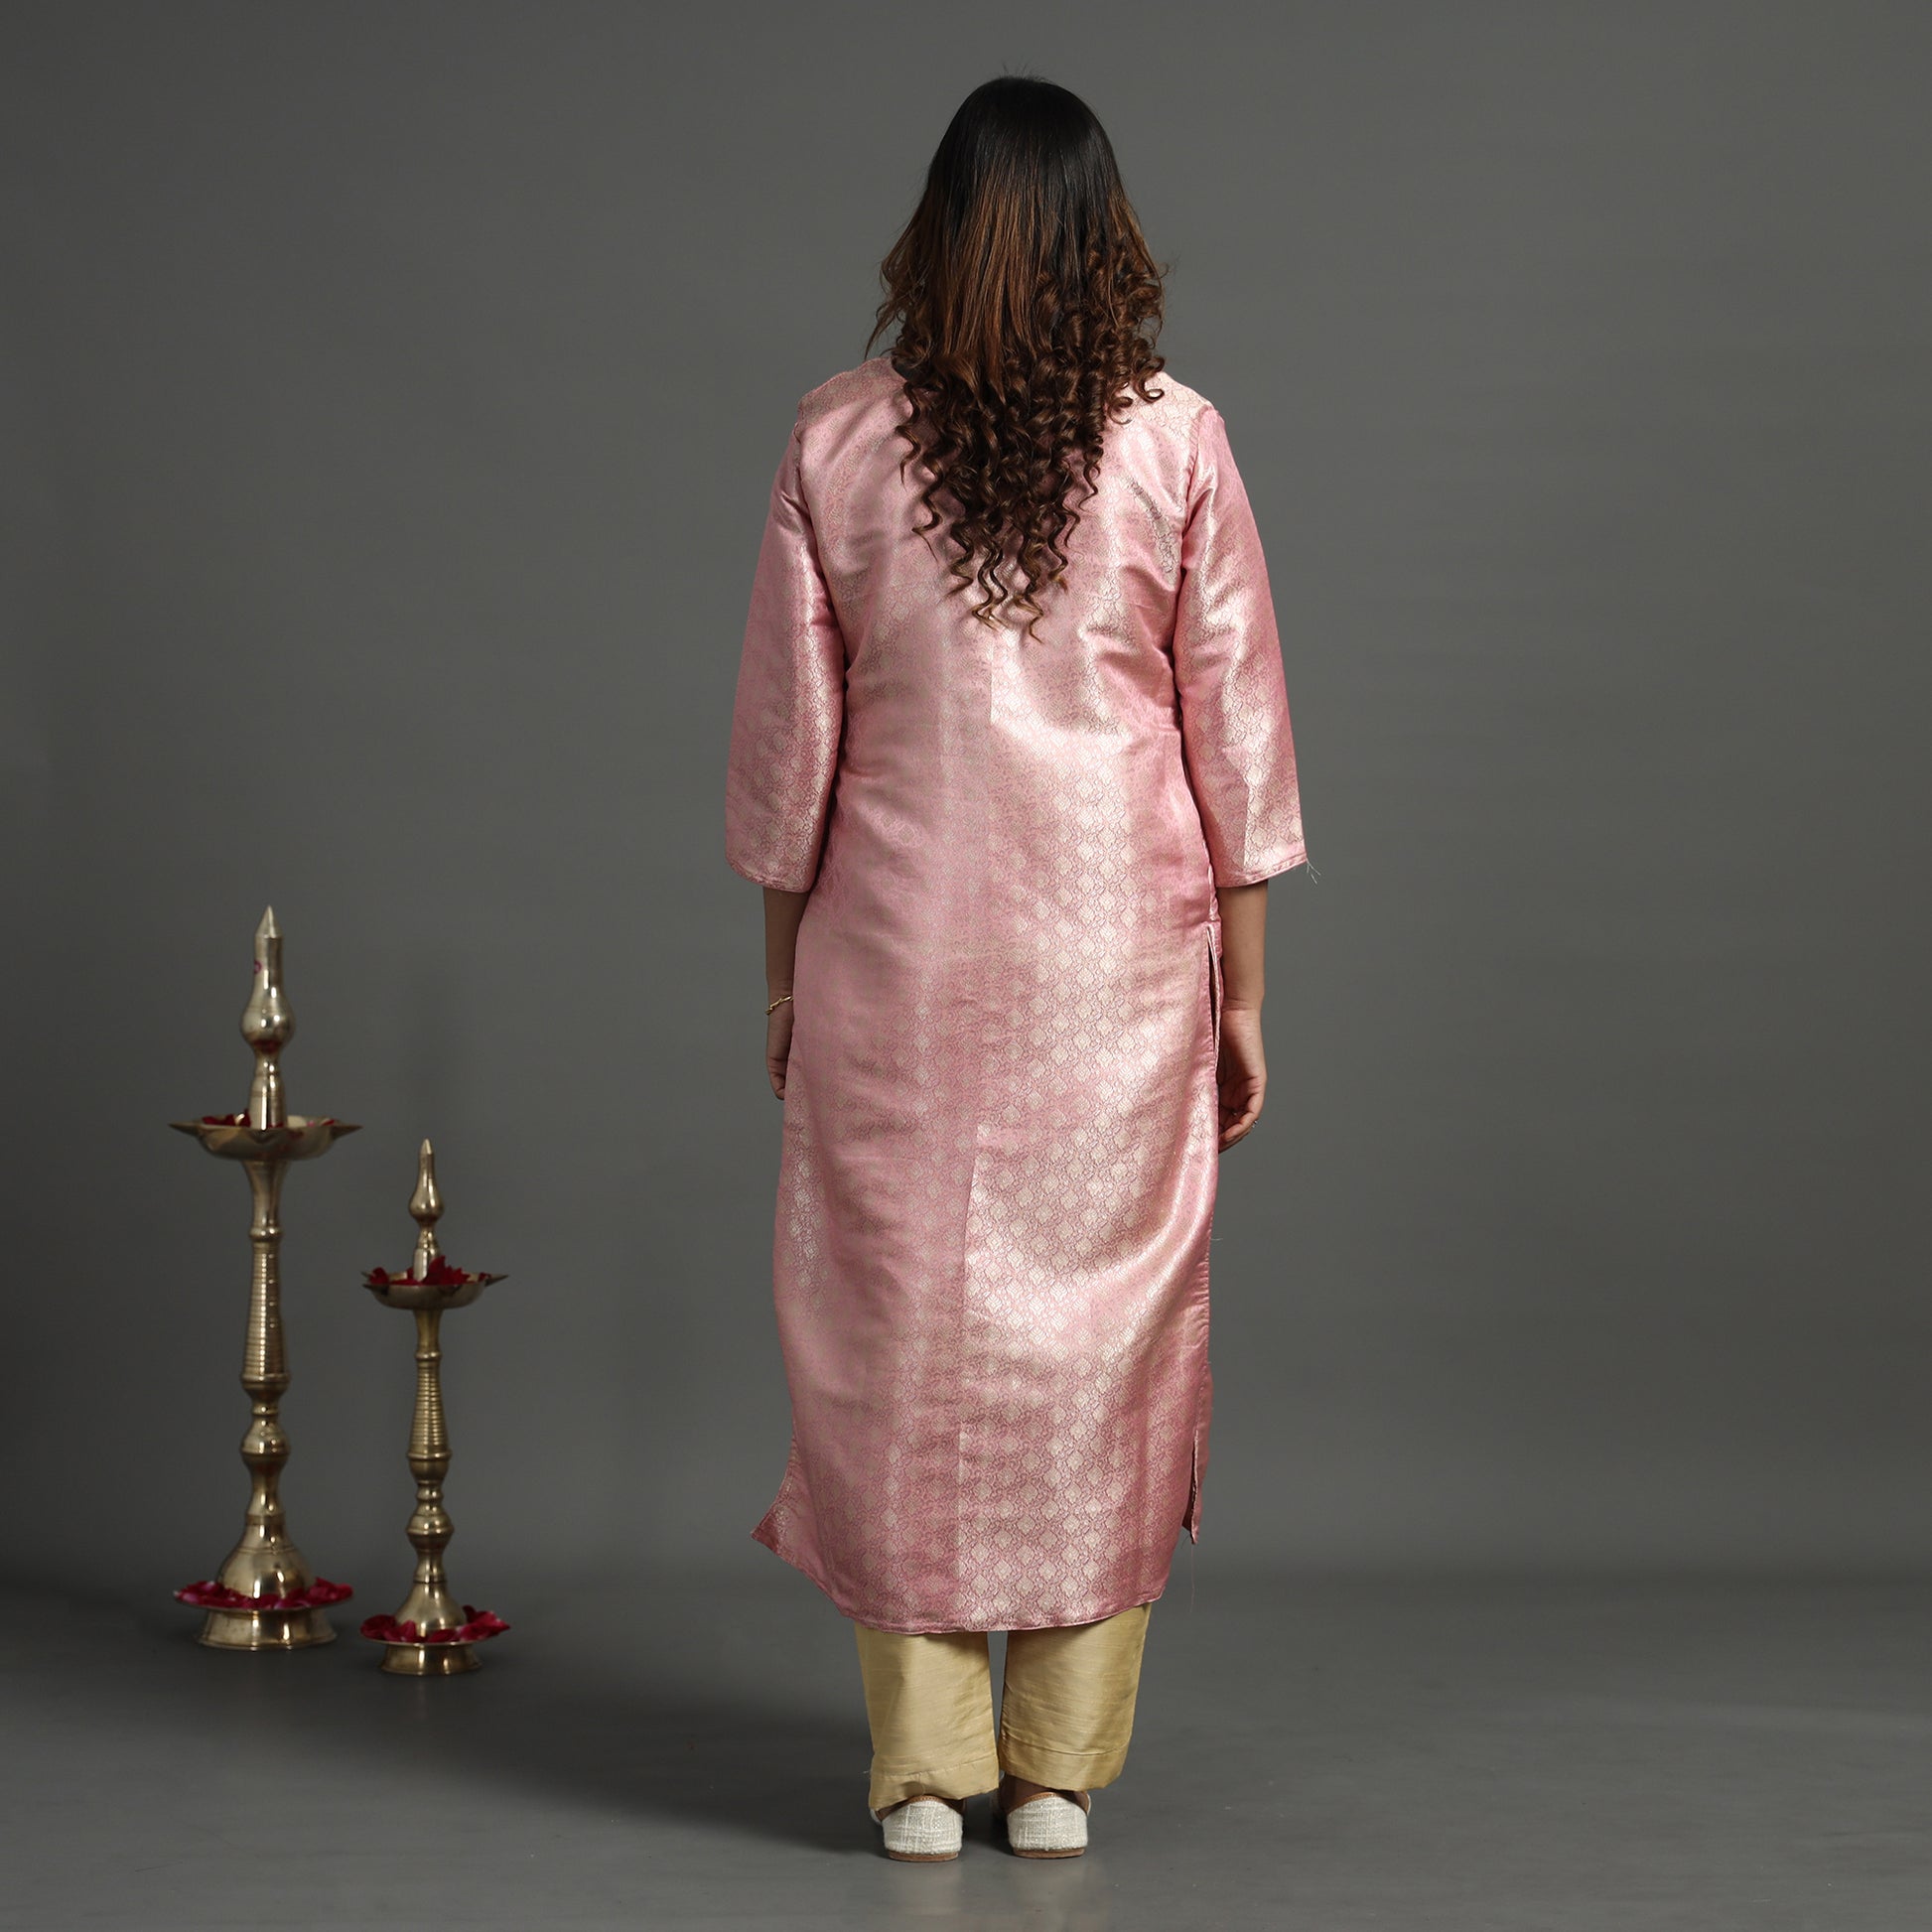 Banarasi Silk Kurta with Pant Set
